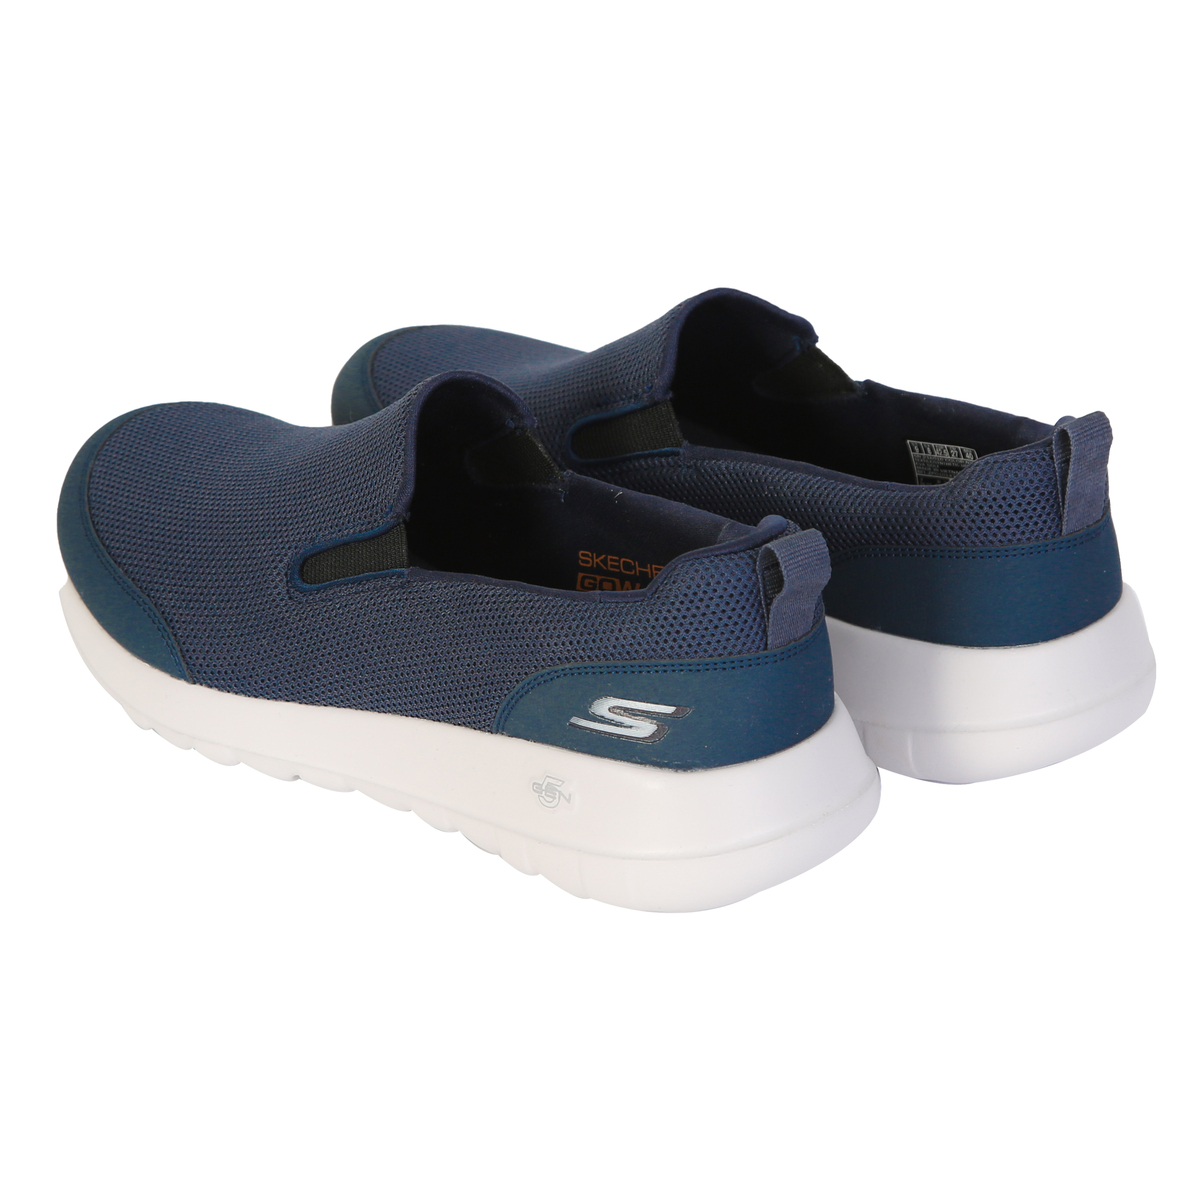 Skechers Men's Sport Shoes 216010 Navy, 41